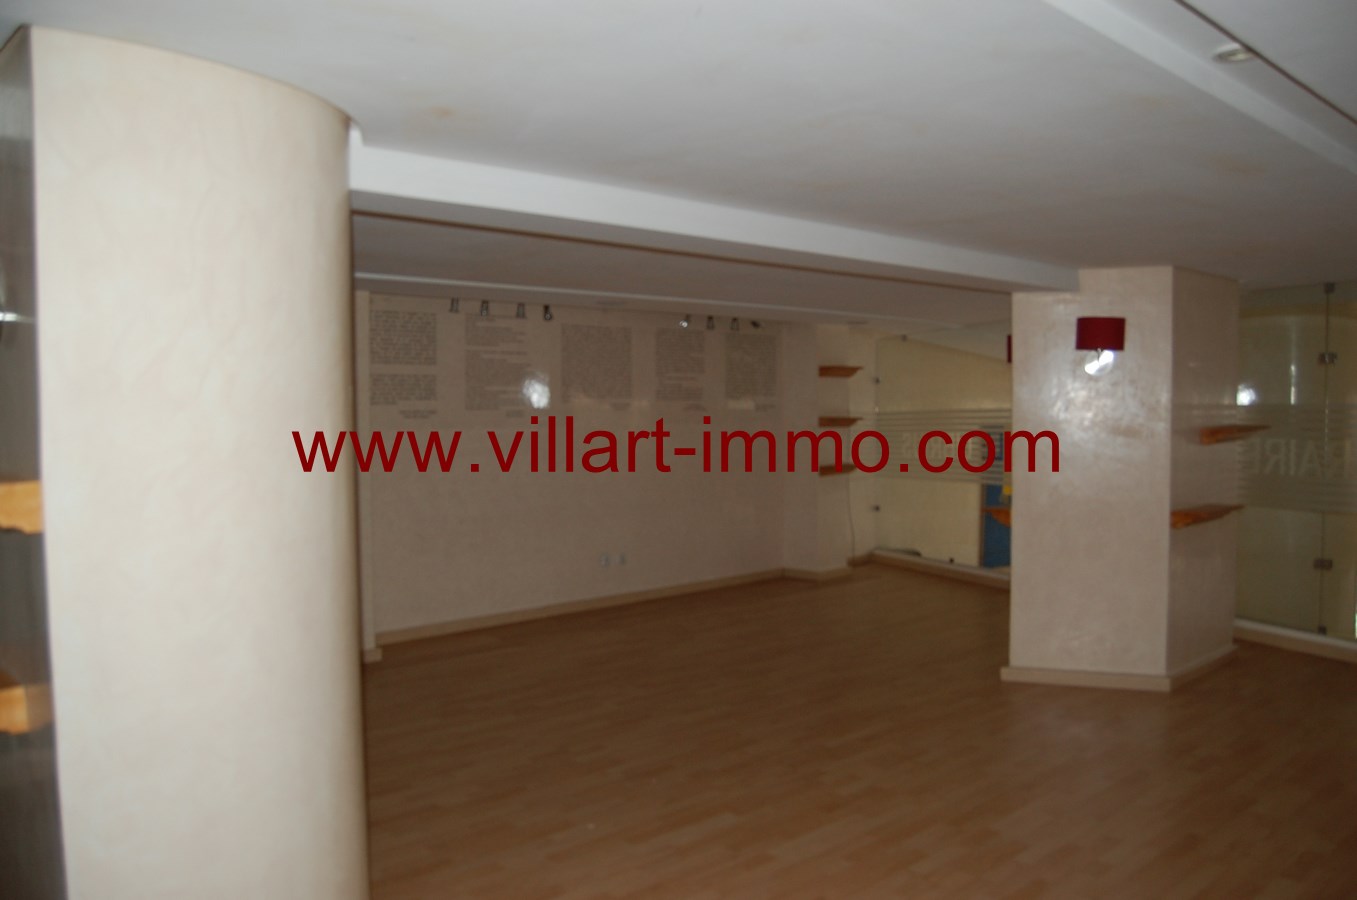 4-Vente-Local-Centre-Ville-Tanger-Mezzanine 1-Villart Immo